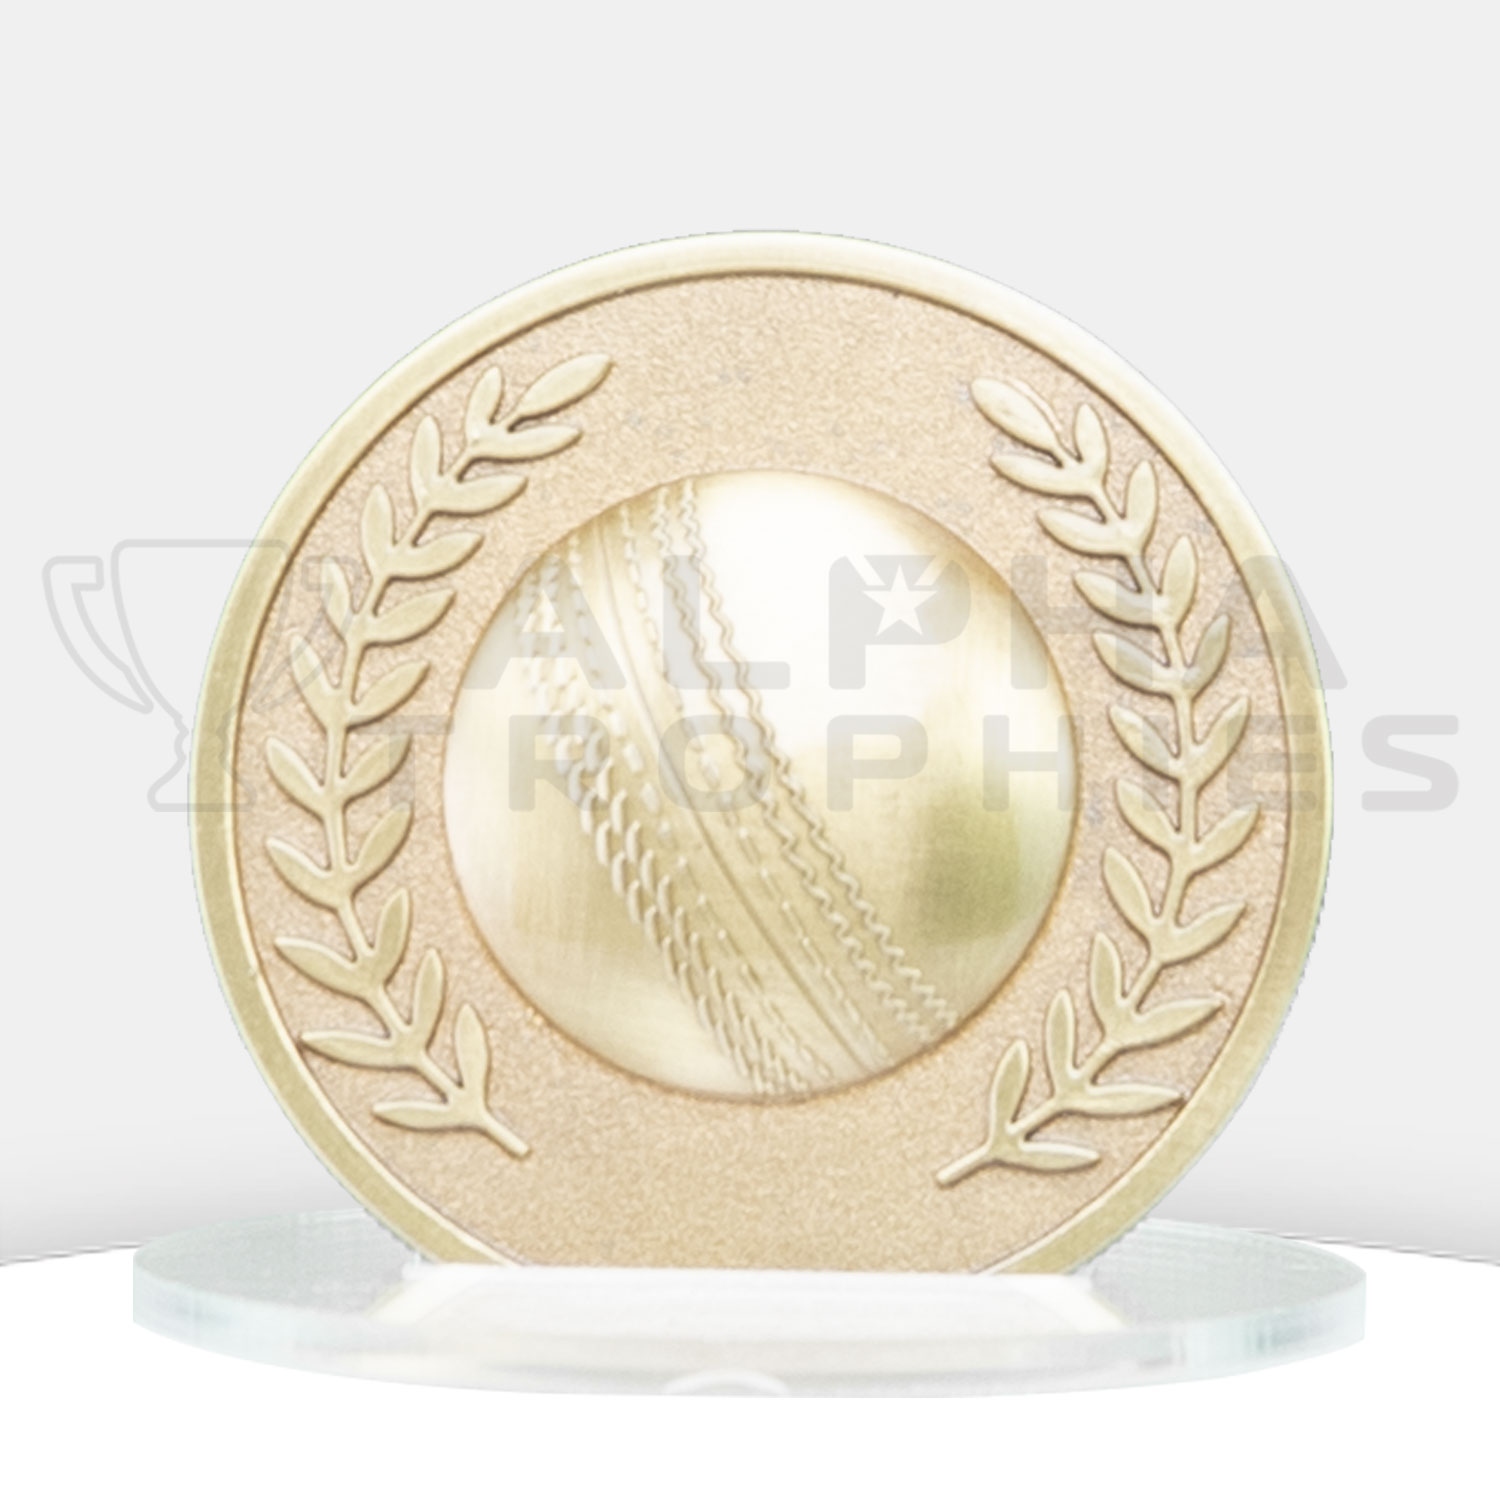 cricket-prestige-medal-front